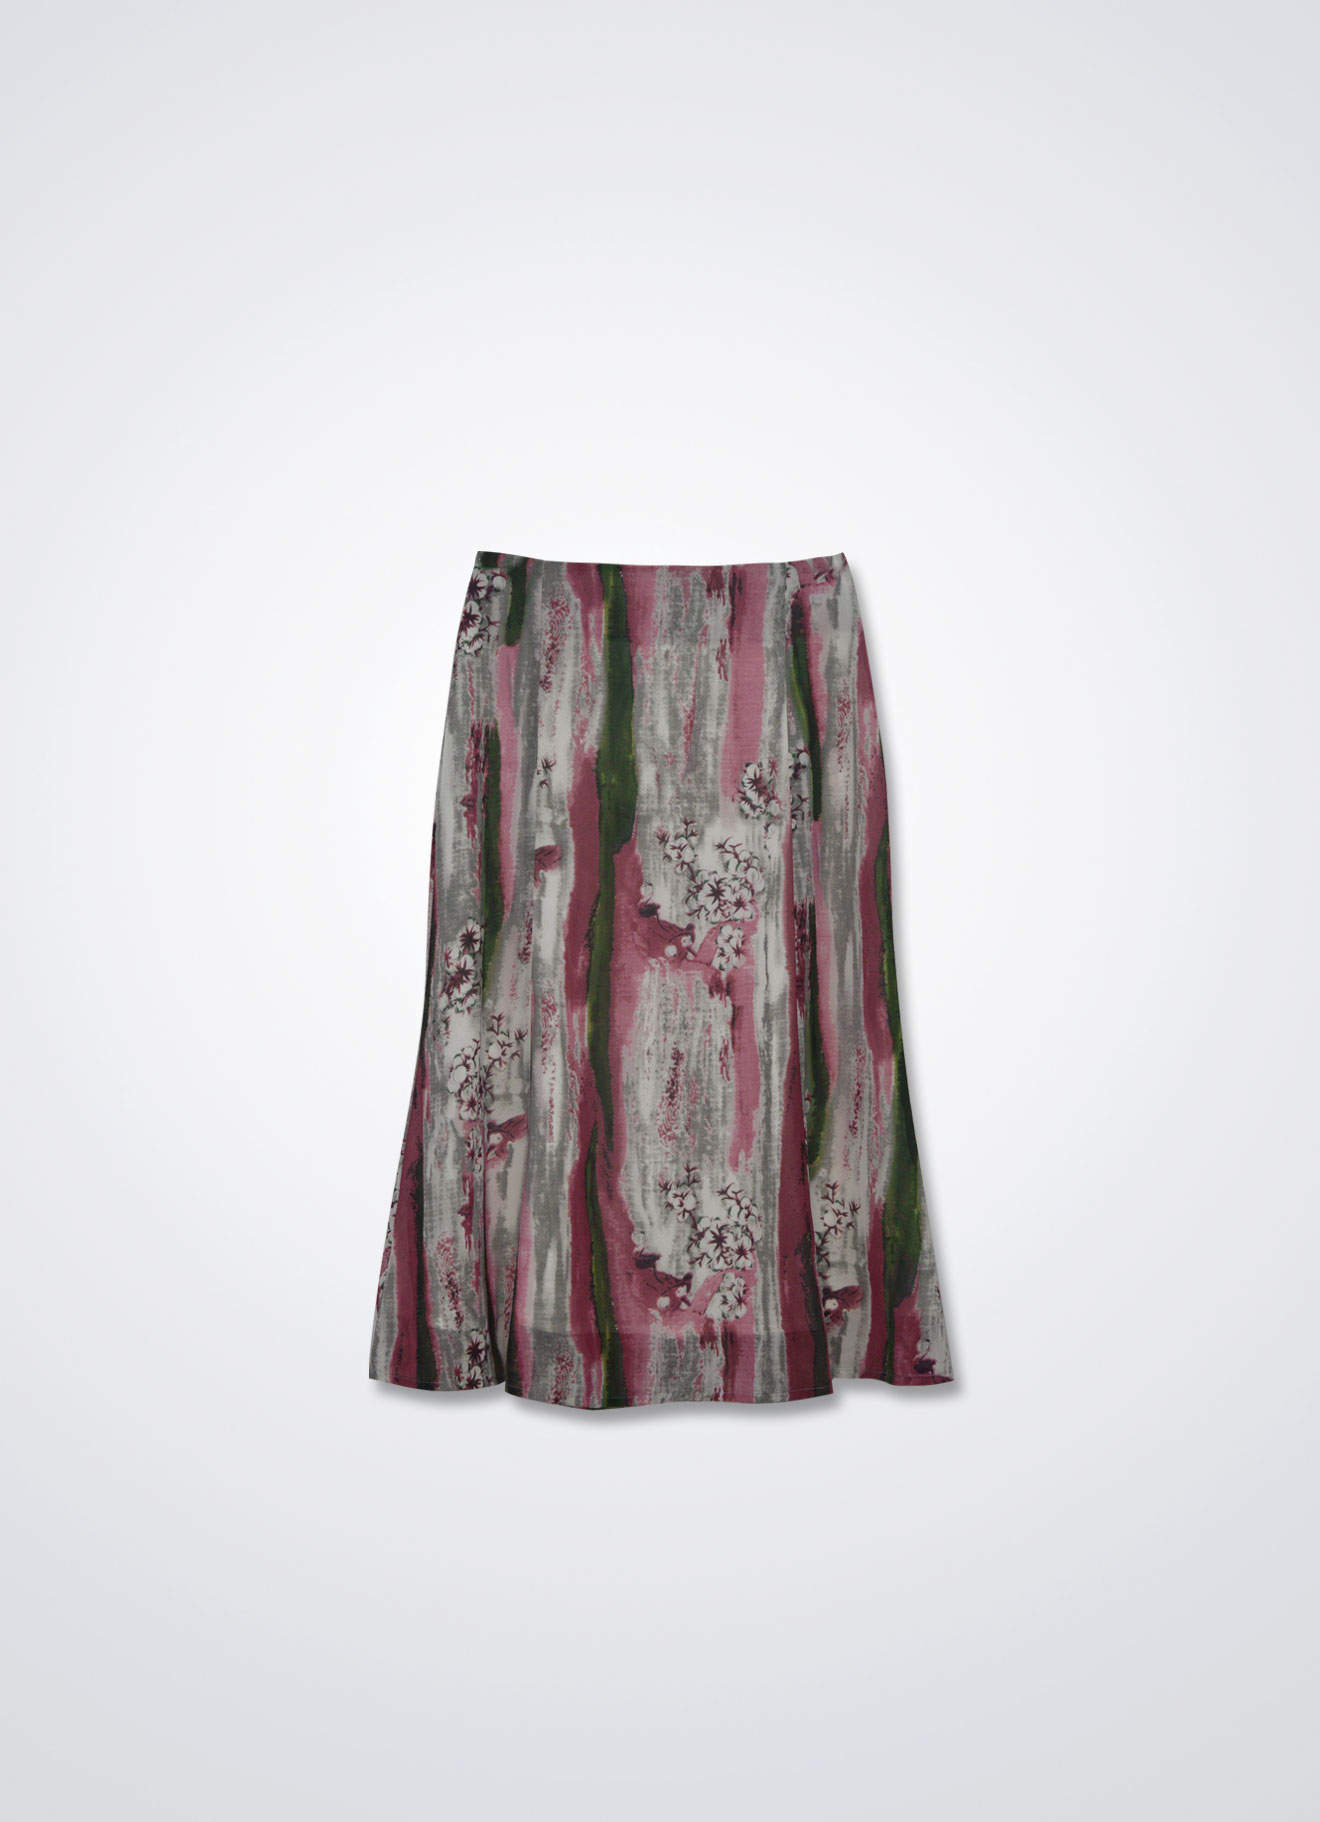 Malaga by Printed Skirt